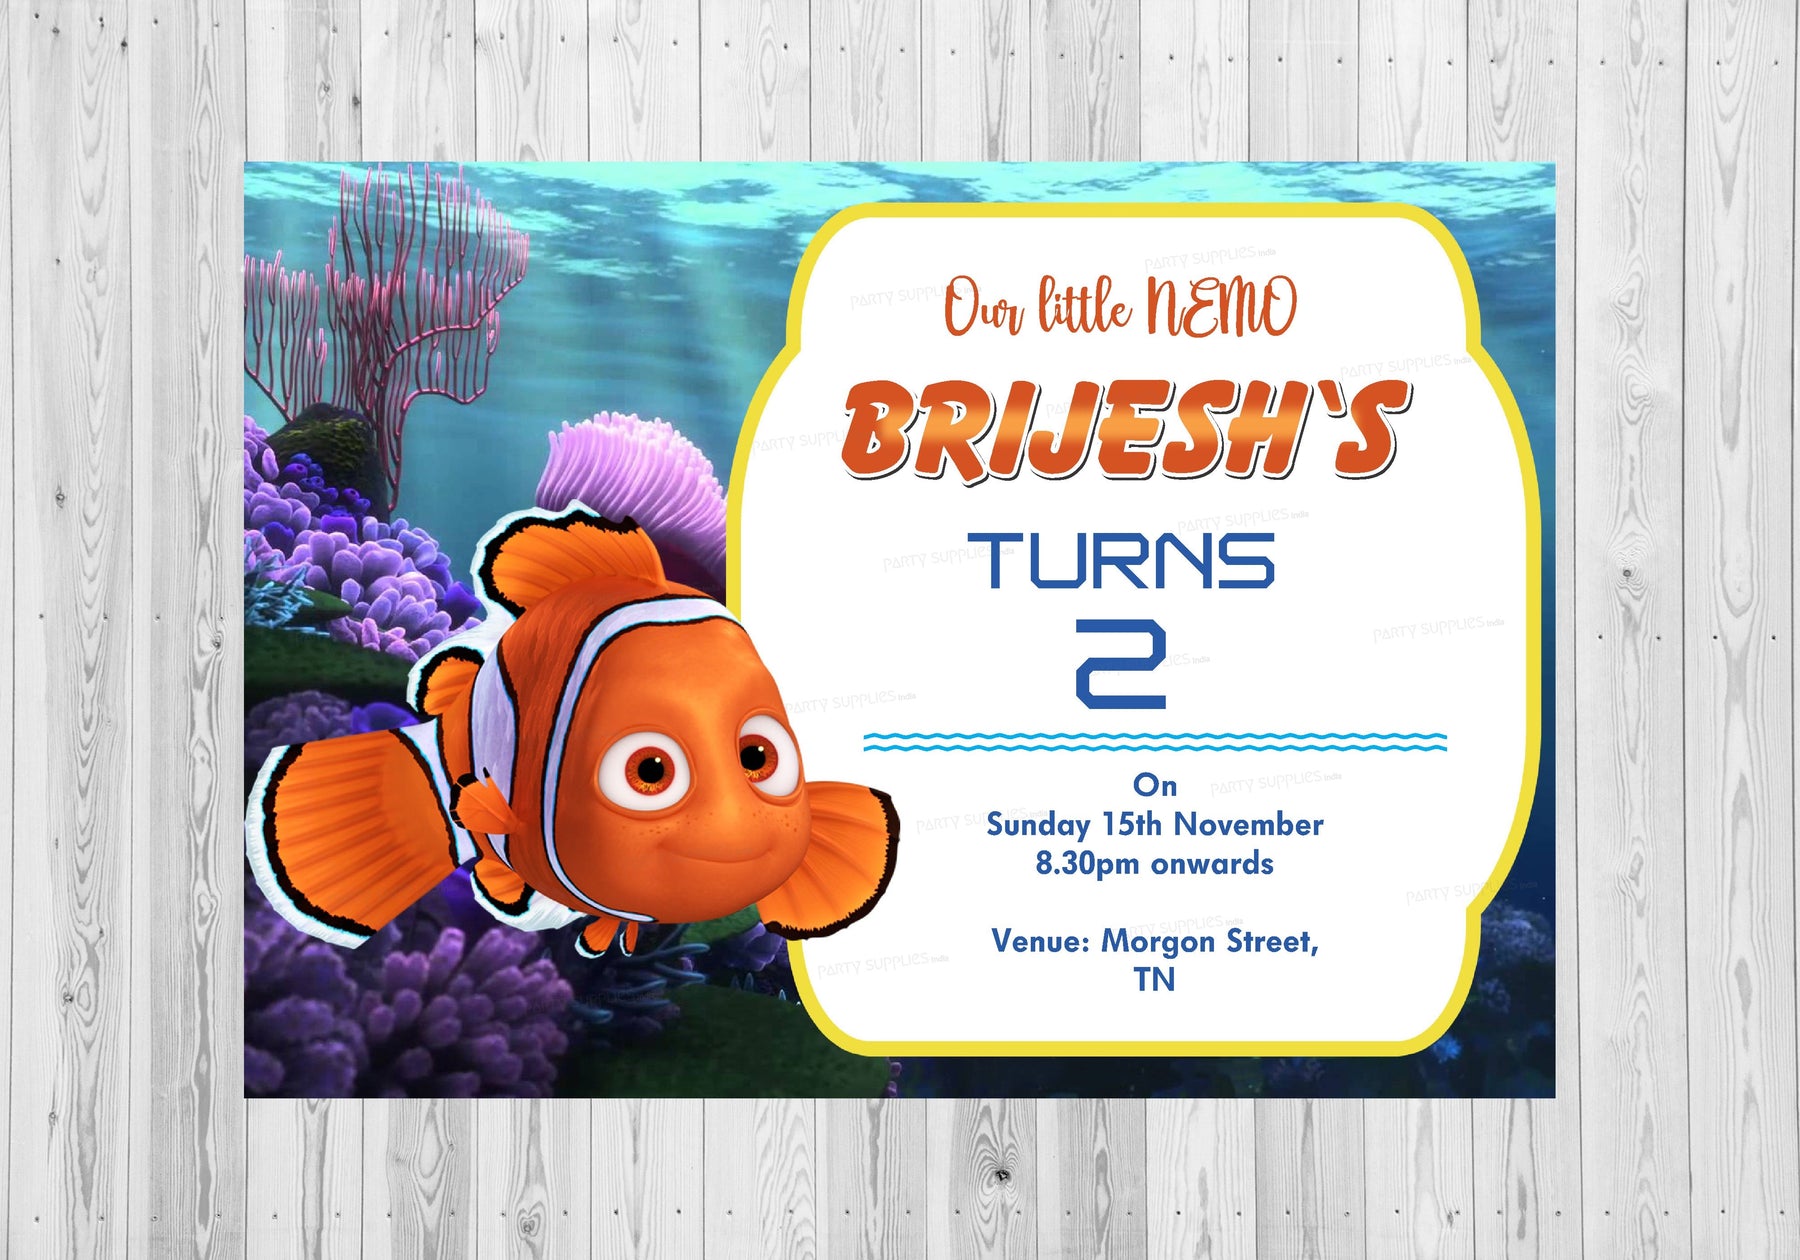 PSI Nemo and Dory Theme Invite